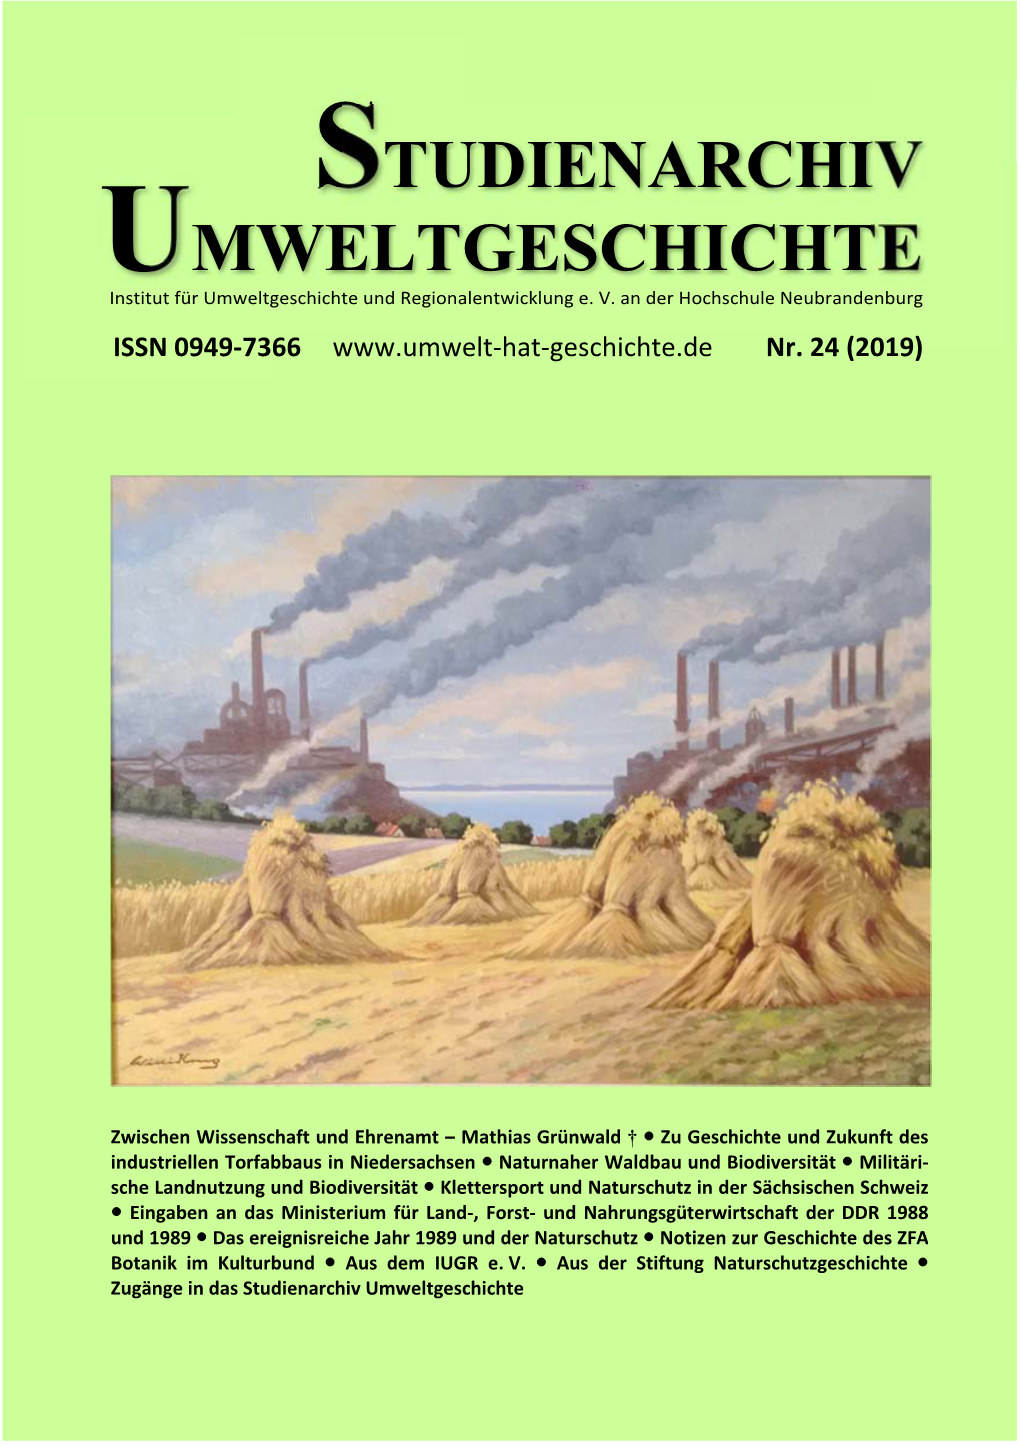 Studienarchiv Umweltgeschichte Nr. 24 (2019) Im Internet: Www